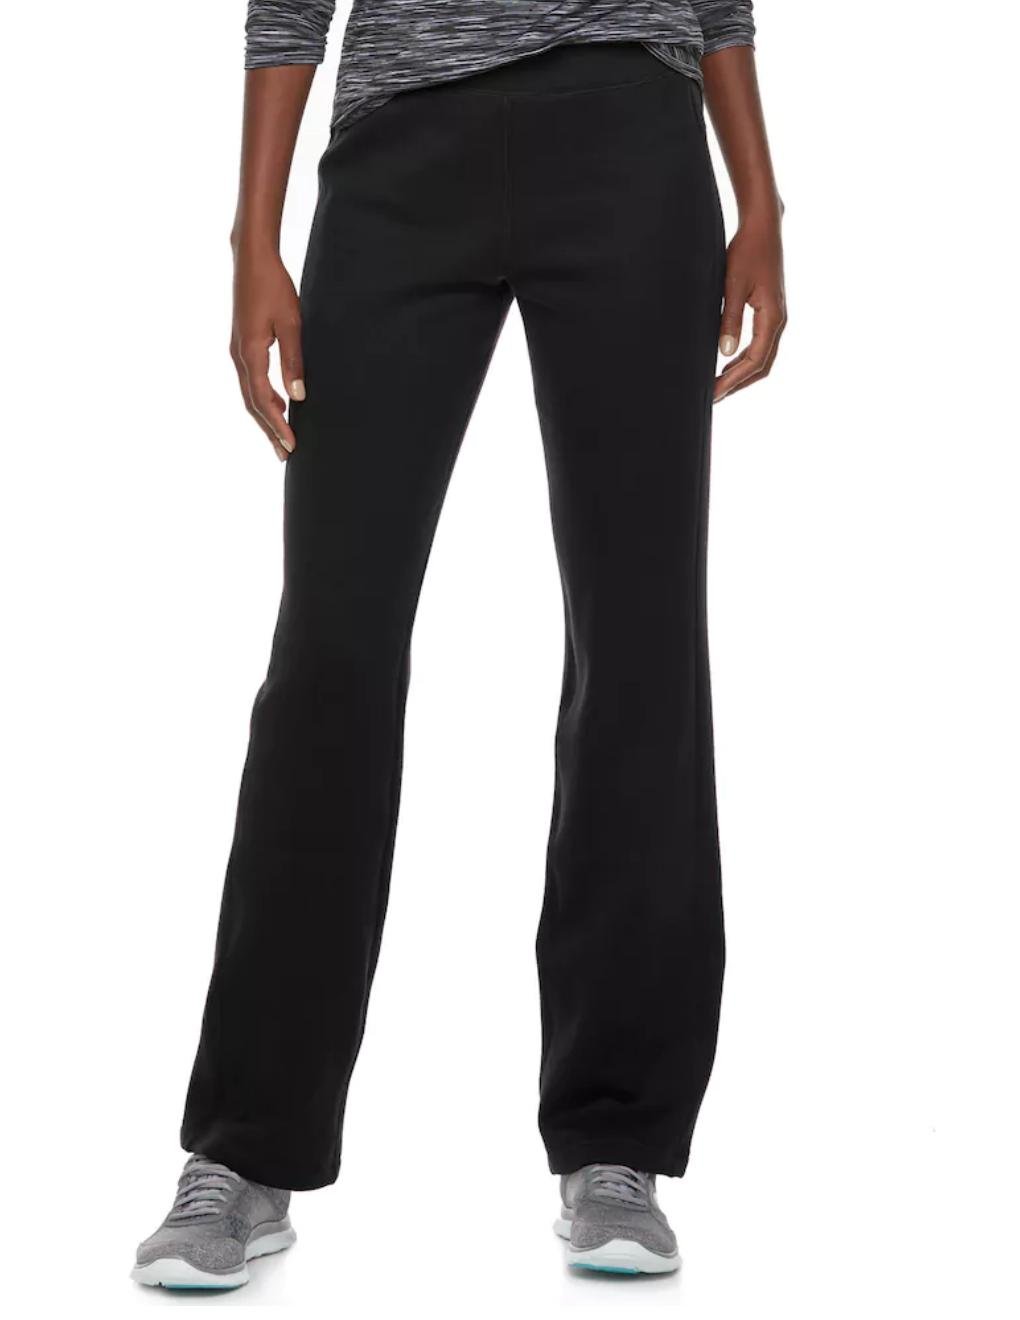 NEW Tek Gear Womens Basic Fleece Dry Tek Pants Black Size Small or S